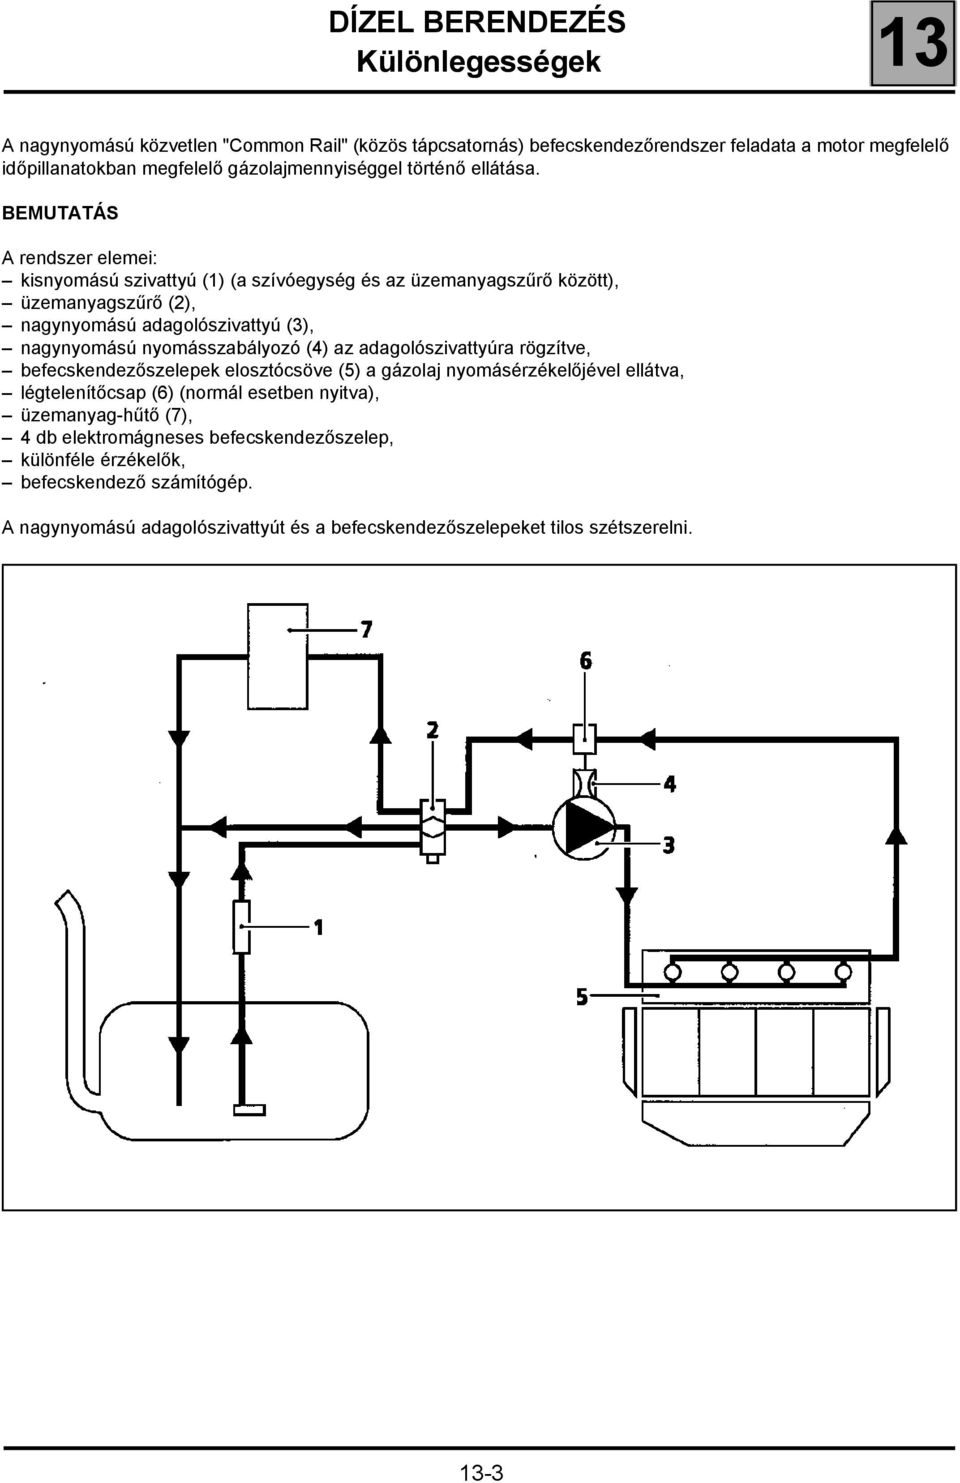 BEMUTATÁS A rendszer elemei: kisnyomású szivattyú (1) (a szívóegység és az üzemanyagszűrő között), üzemanyagszűrő (2), nagynyomású adagolószivattyú (3), nagynyomású nyomásszabályozó